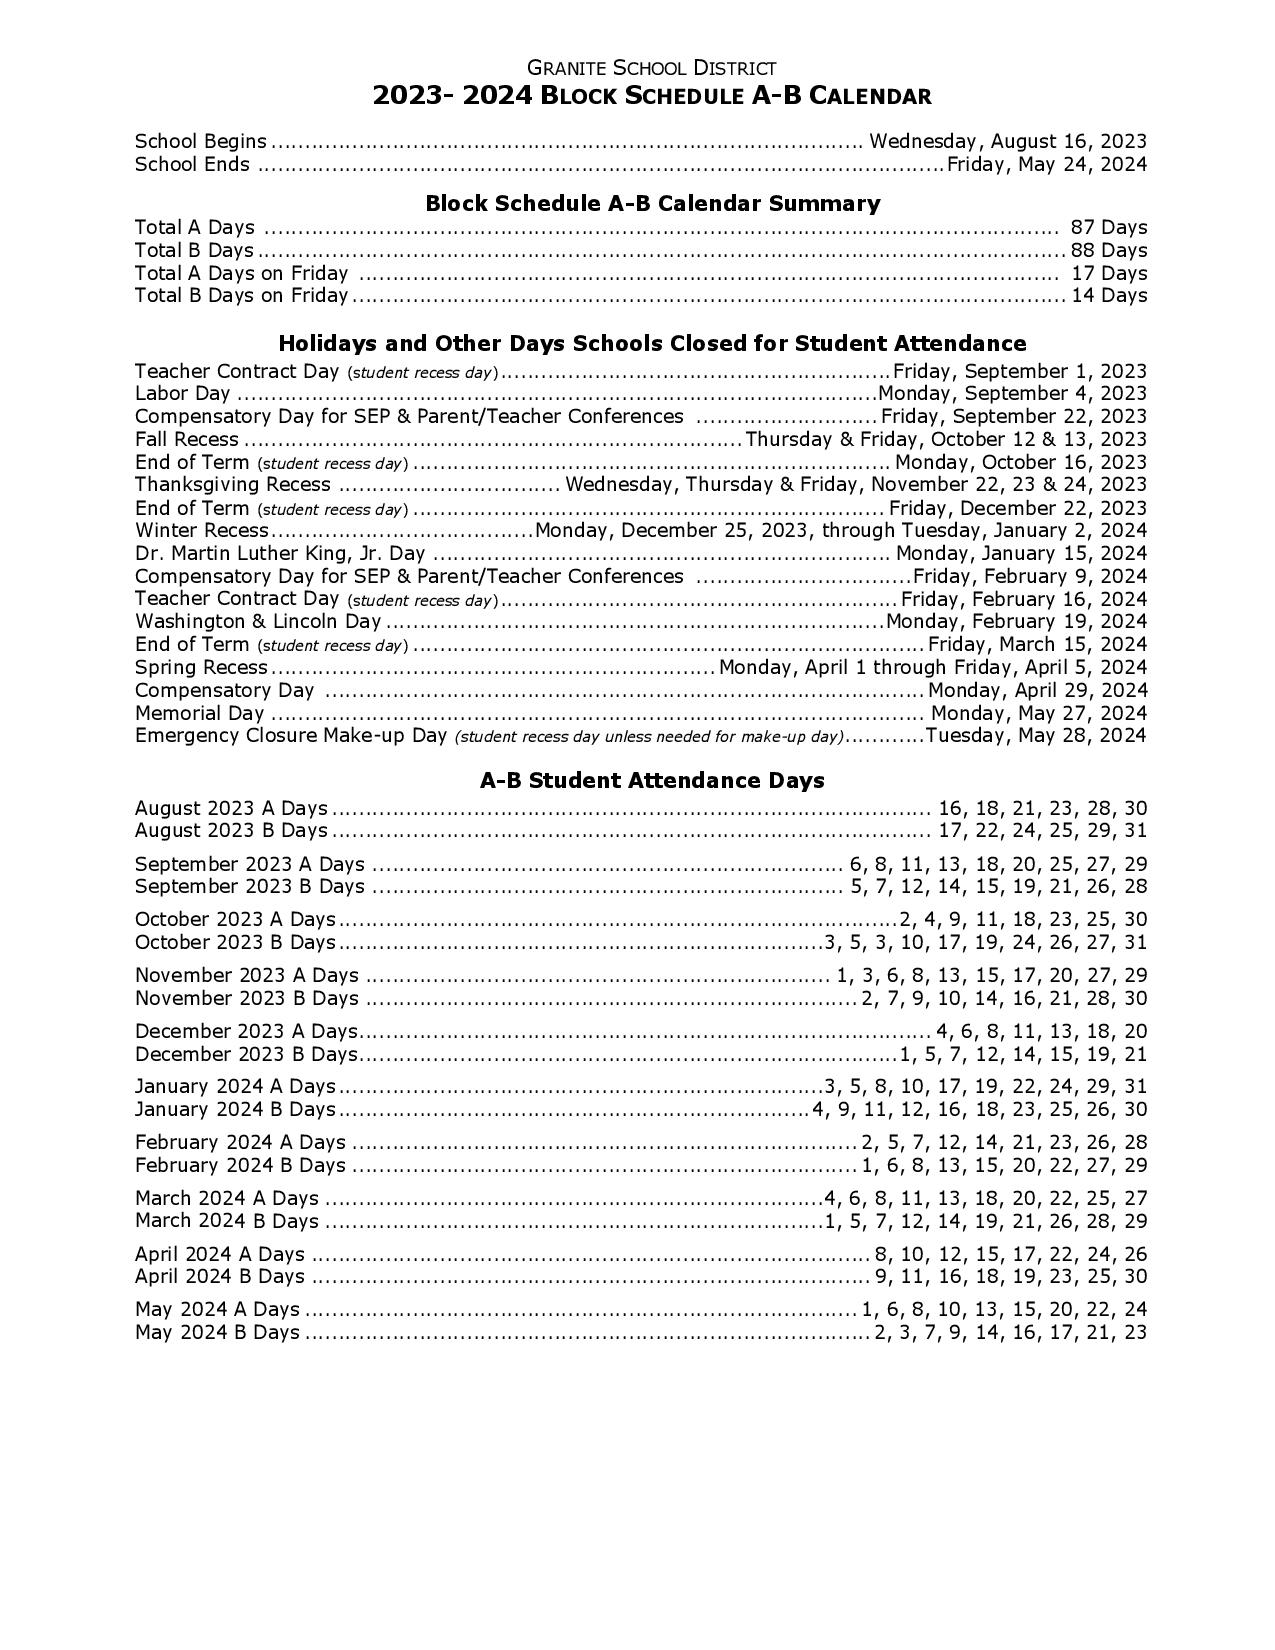 Granite School District Calendar 20232024 in PDF